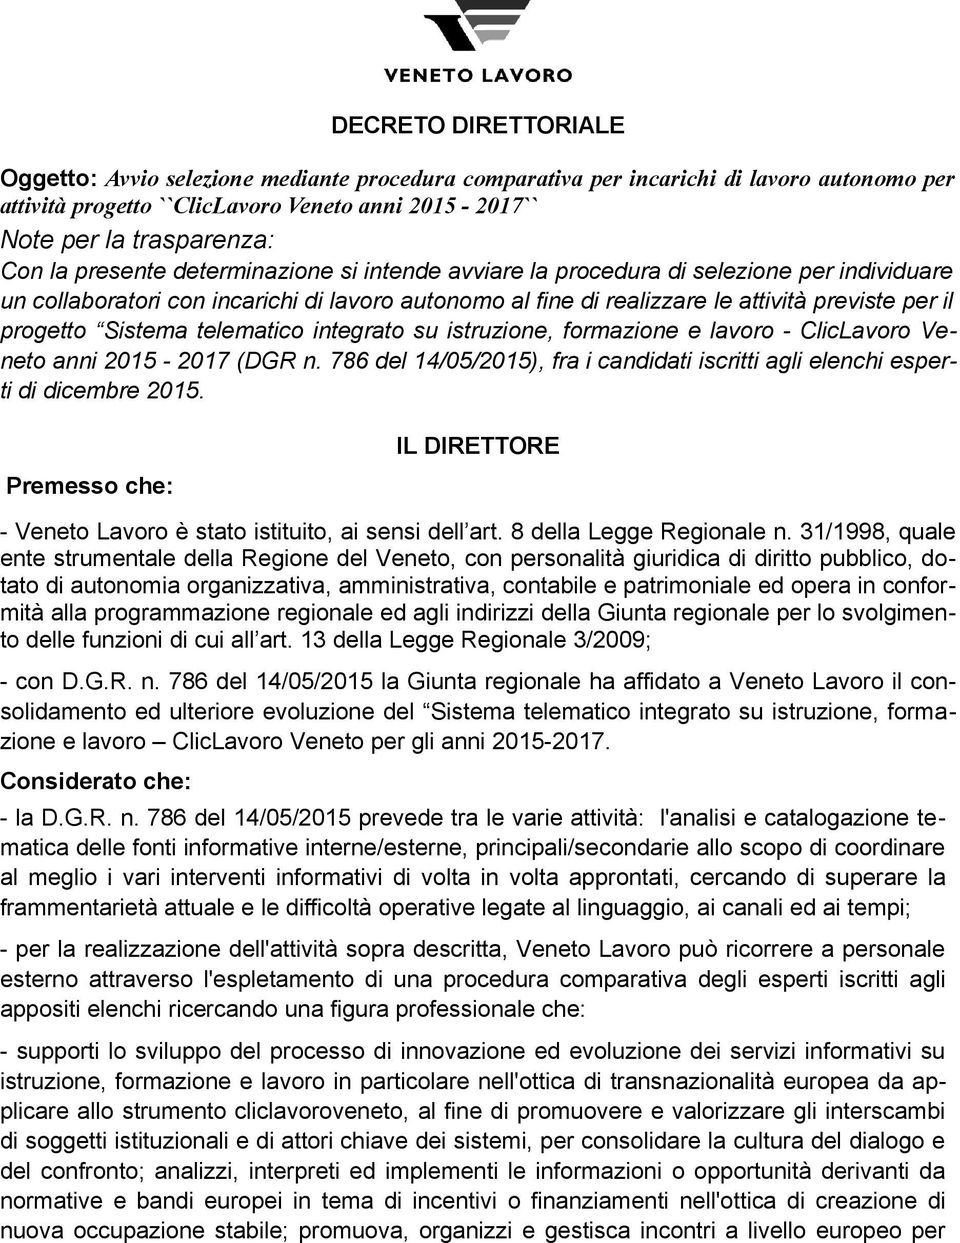 Sistema telematico integrato su istruzione, formazione e lavoro - ClicLavoro Veneto anni 2015-2017 (DGR n. 786 del 14/05/2015), fra i candidati iscritti agli elenchi esperti di dicembre 2015.